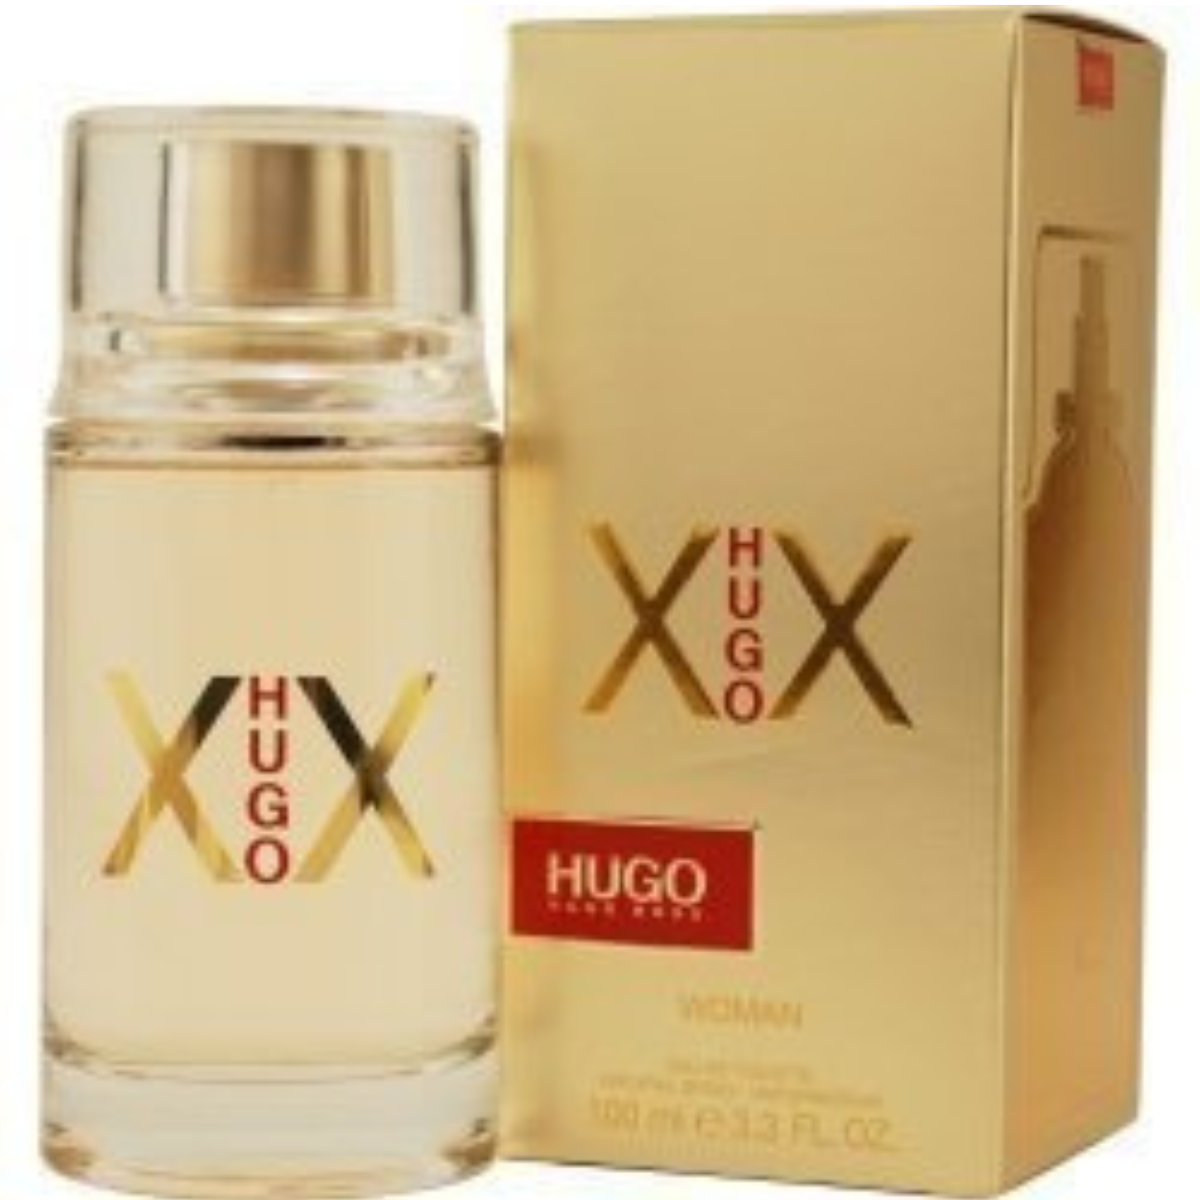 Hugo Boss XX 100 ml for women perfume